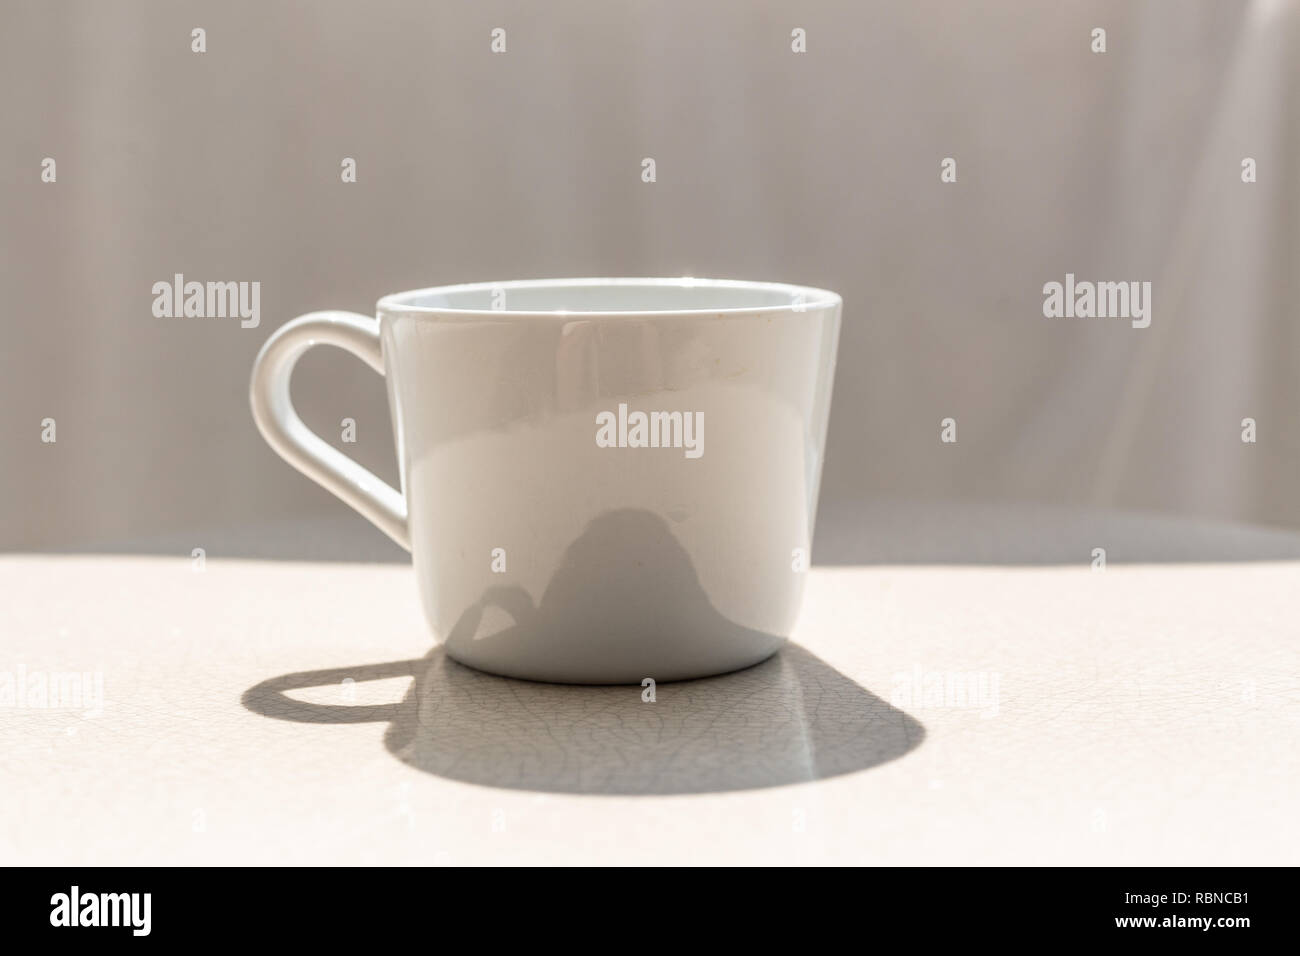 Tasse à café en céramique blanche sur table en céramique blanche, extérieur aux beaux jours avec l'ombre de la coupe sur la table Banque D'Images